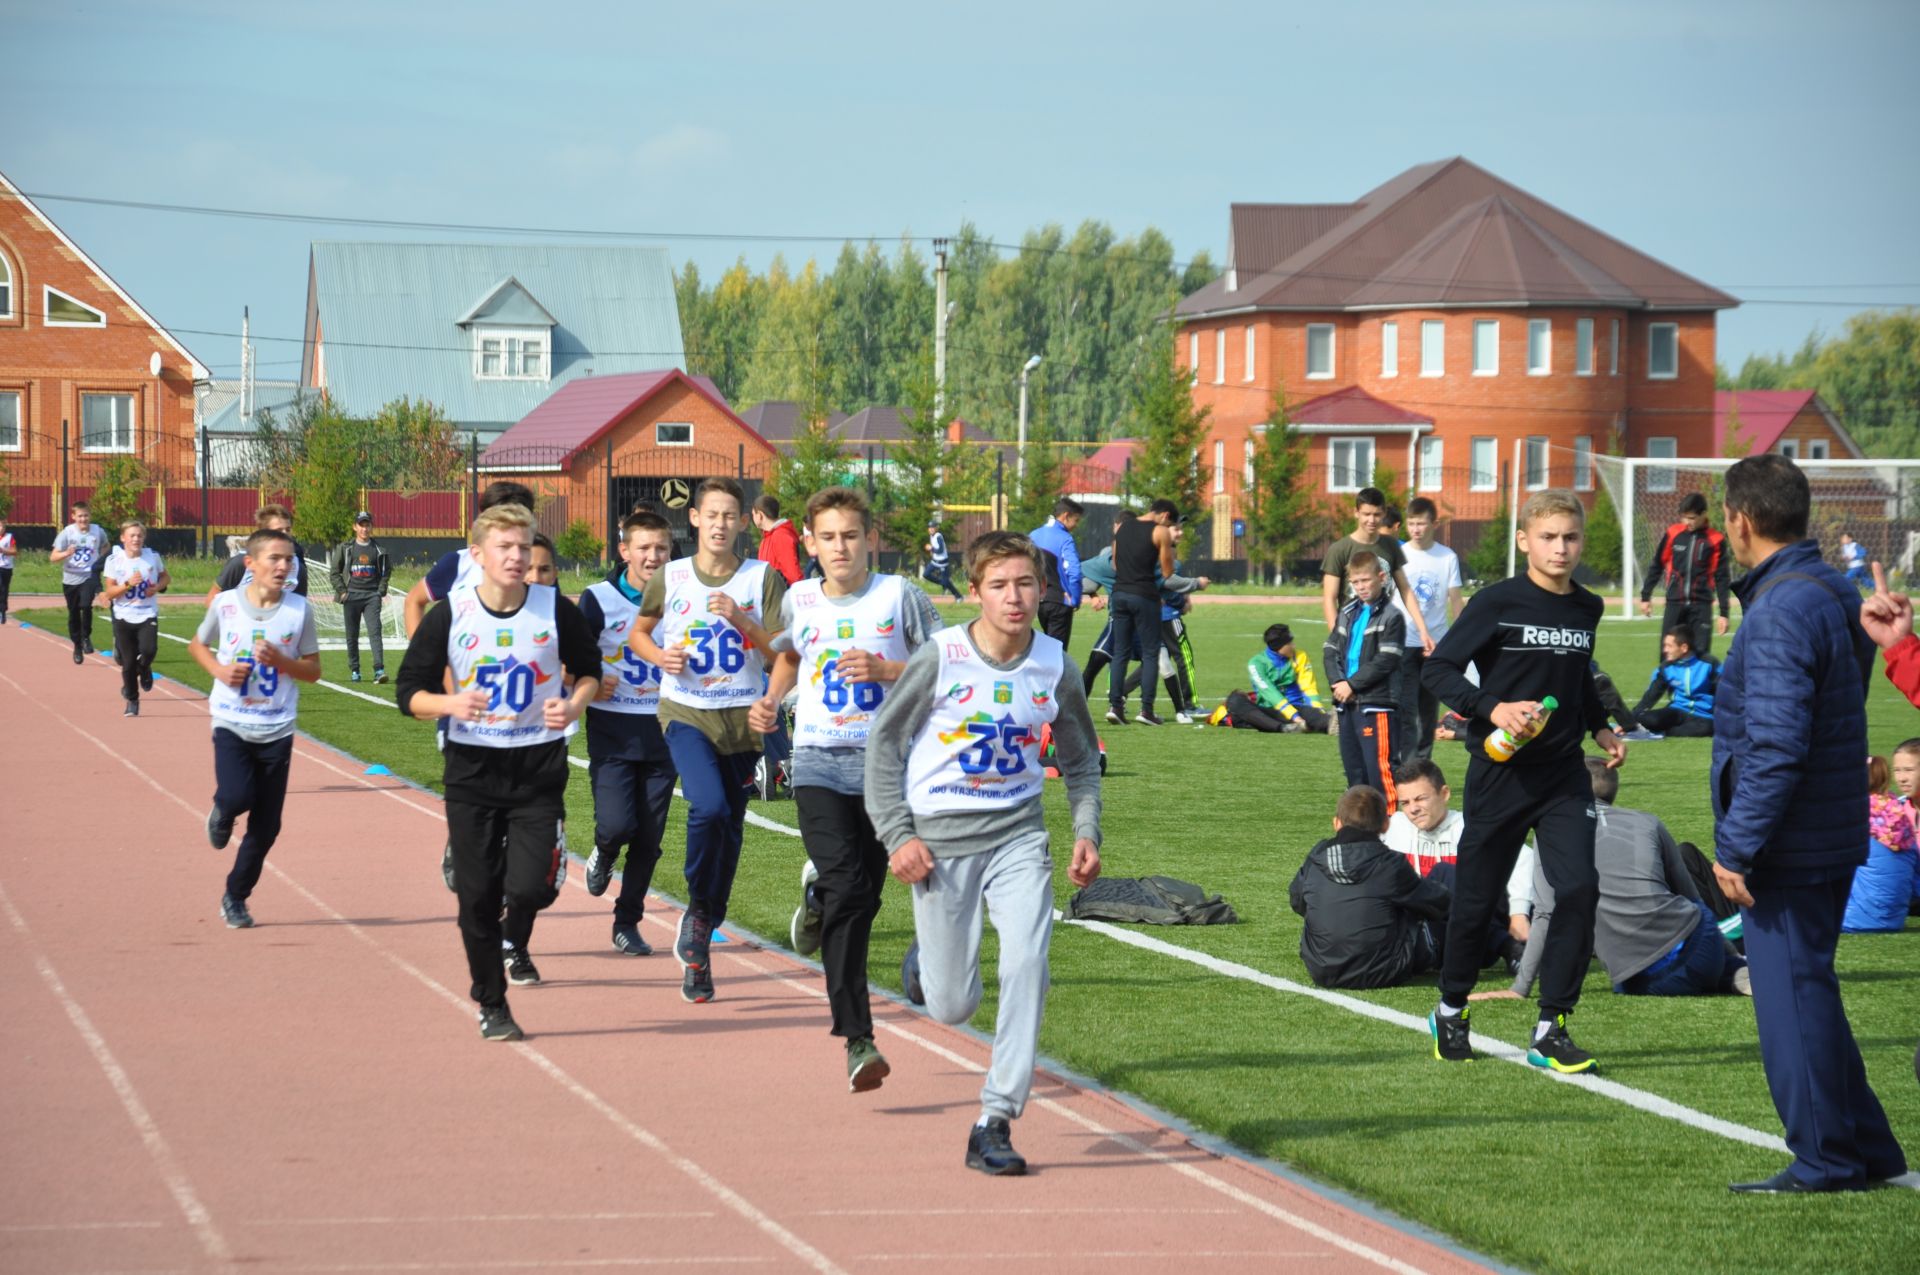 Фирдәвис Шаемовның призларына уздырылучы «Алтын көз» җинел атлетика марафоны 2018